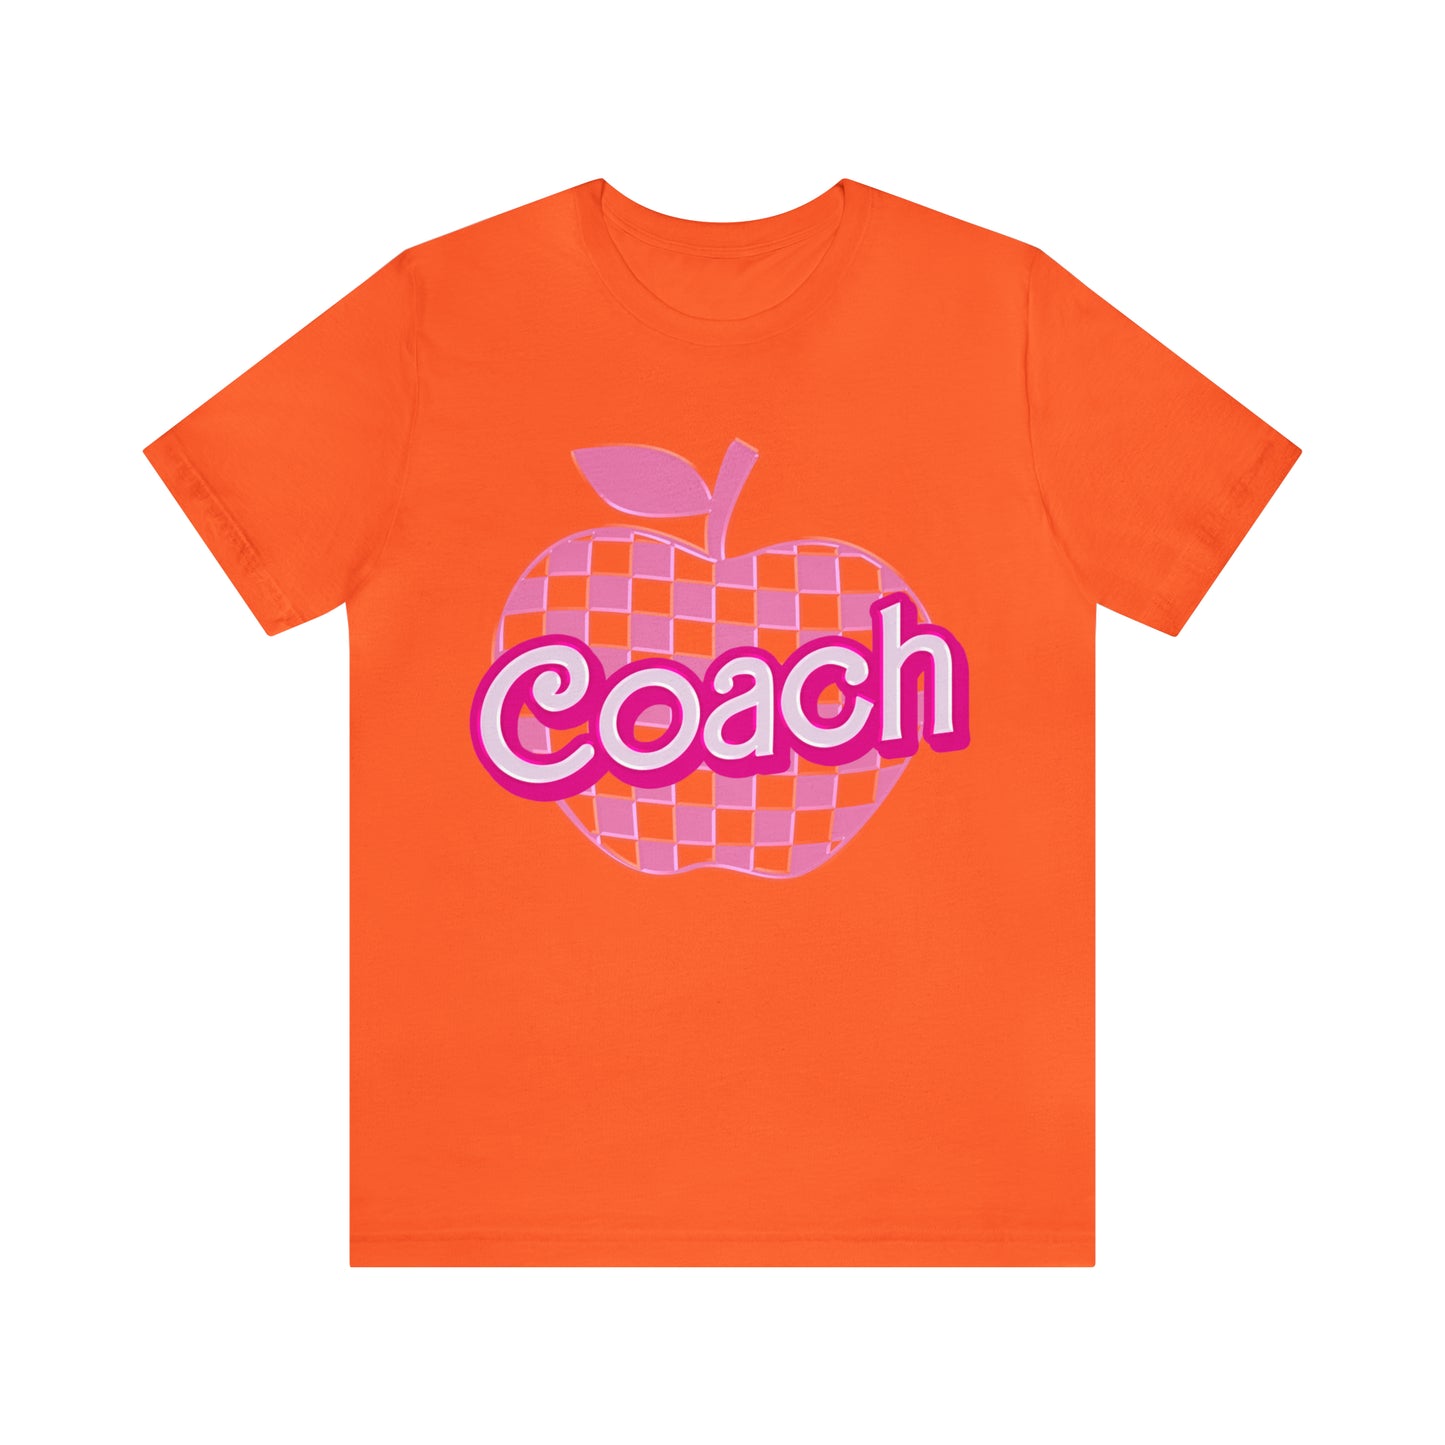 Coach shirt, Pink Sport Coach Shirt, Colorful Coaching shirt, 90s Cheer Coach shirt, Back To School Shirt, Teacher Gift, T815